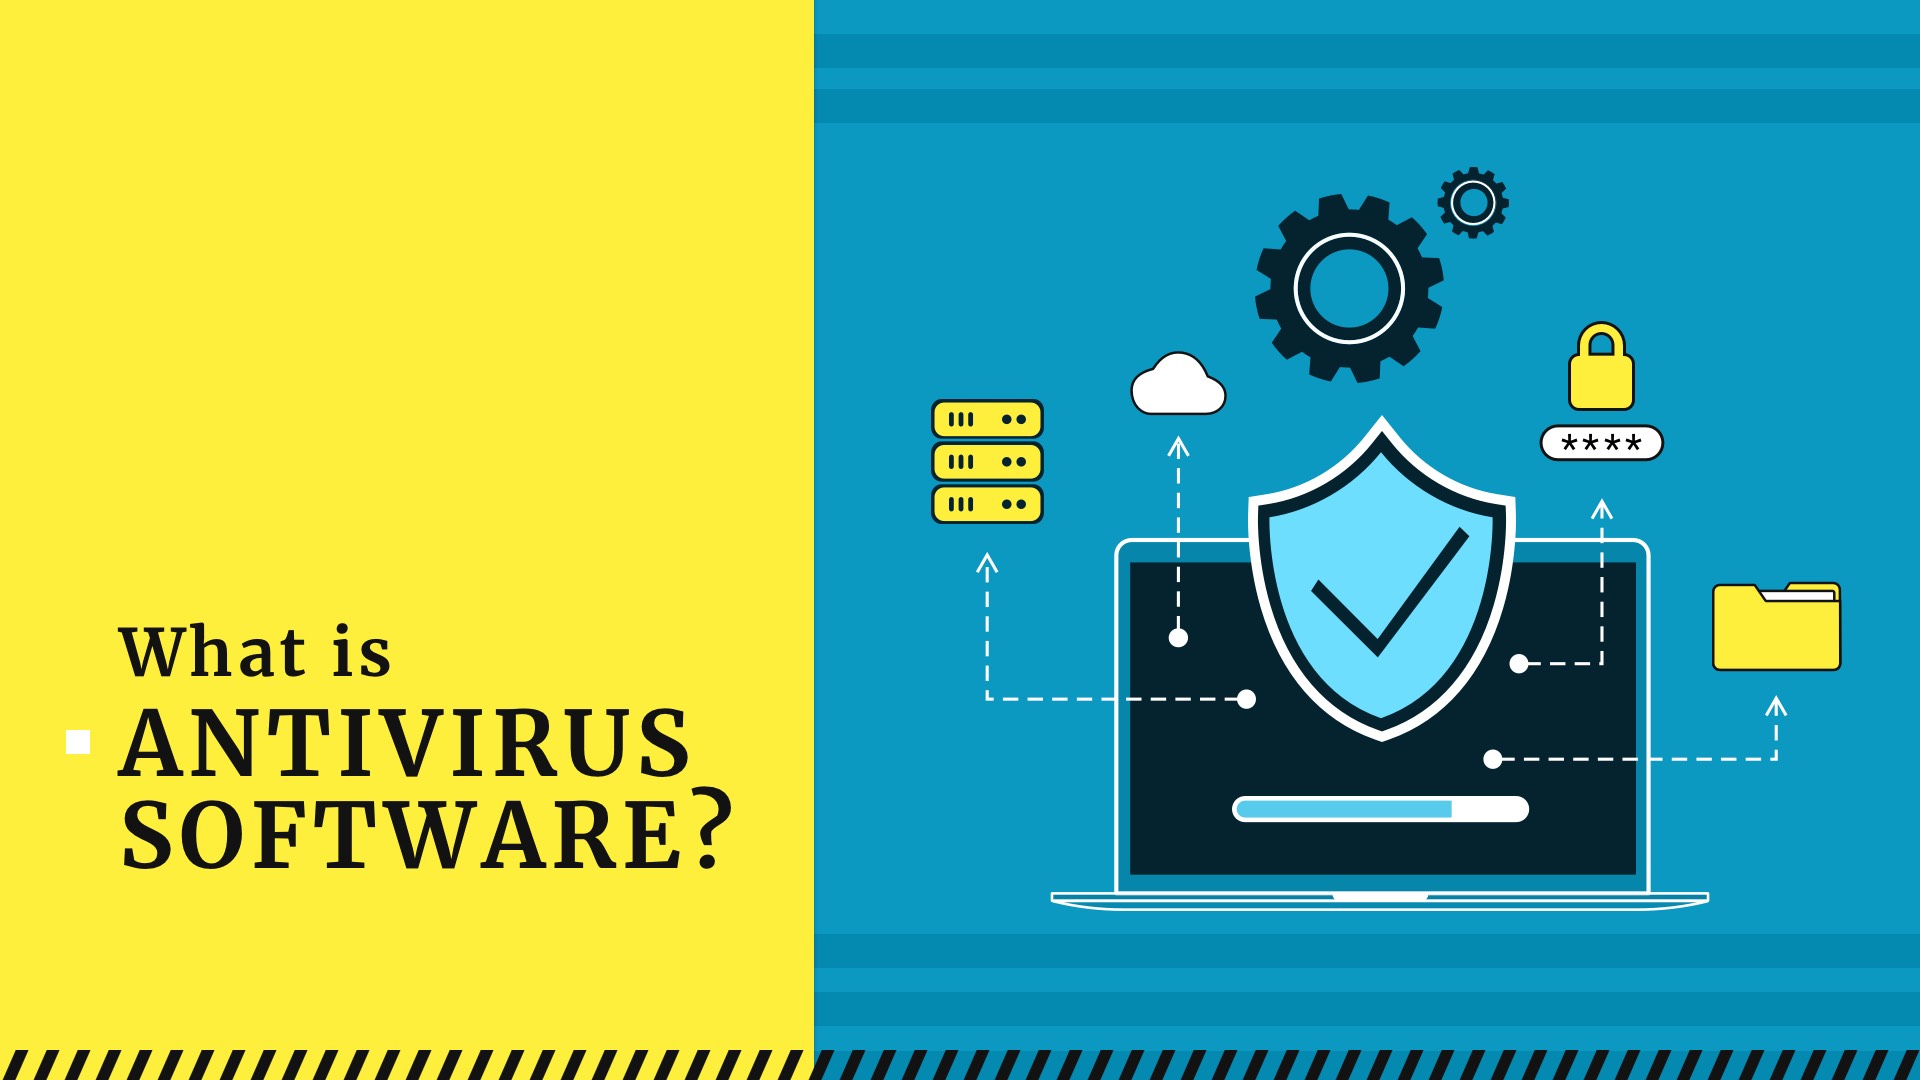 Programas de Antivírus: verifique se seu antivírus está consumindo muitos recursos do sistema.
Programas de Malware ou Adware: estes programas podem sobrecarregar o computador.